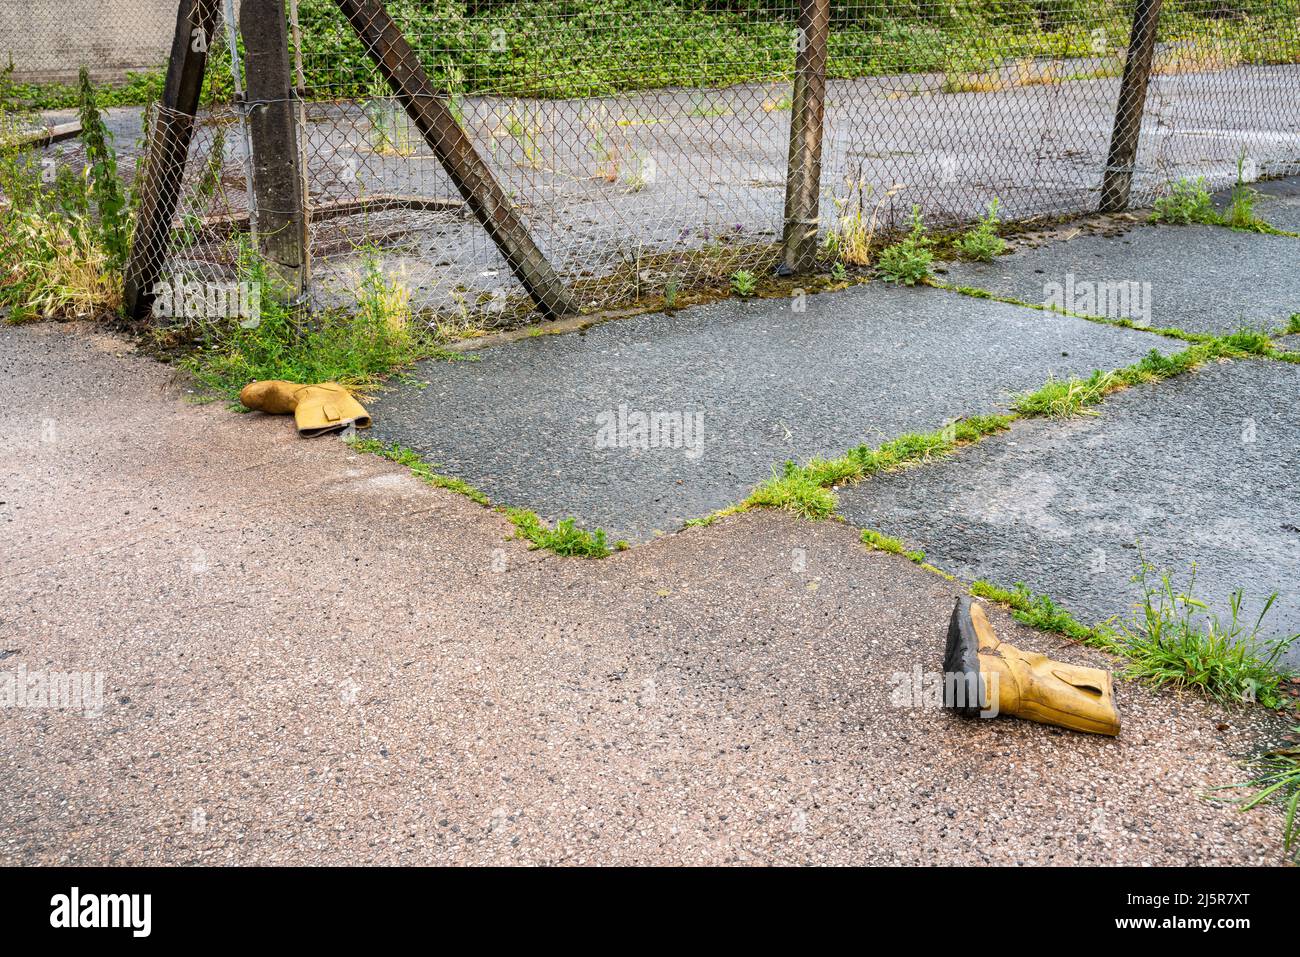 Paire de bottes de manutention jaunes jetées dans la rue arrière de la ville Banque D'Images